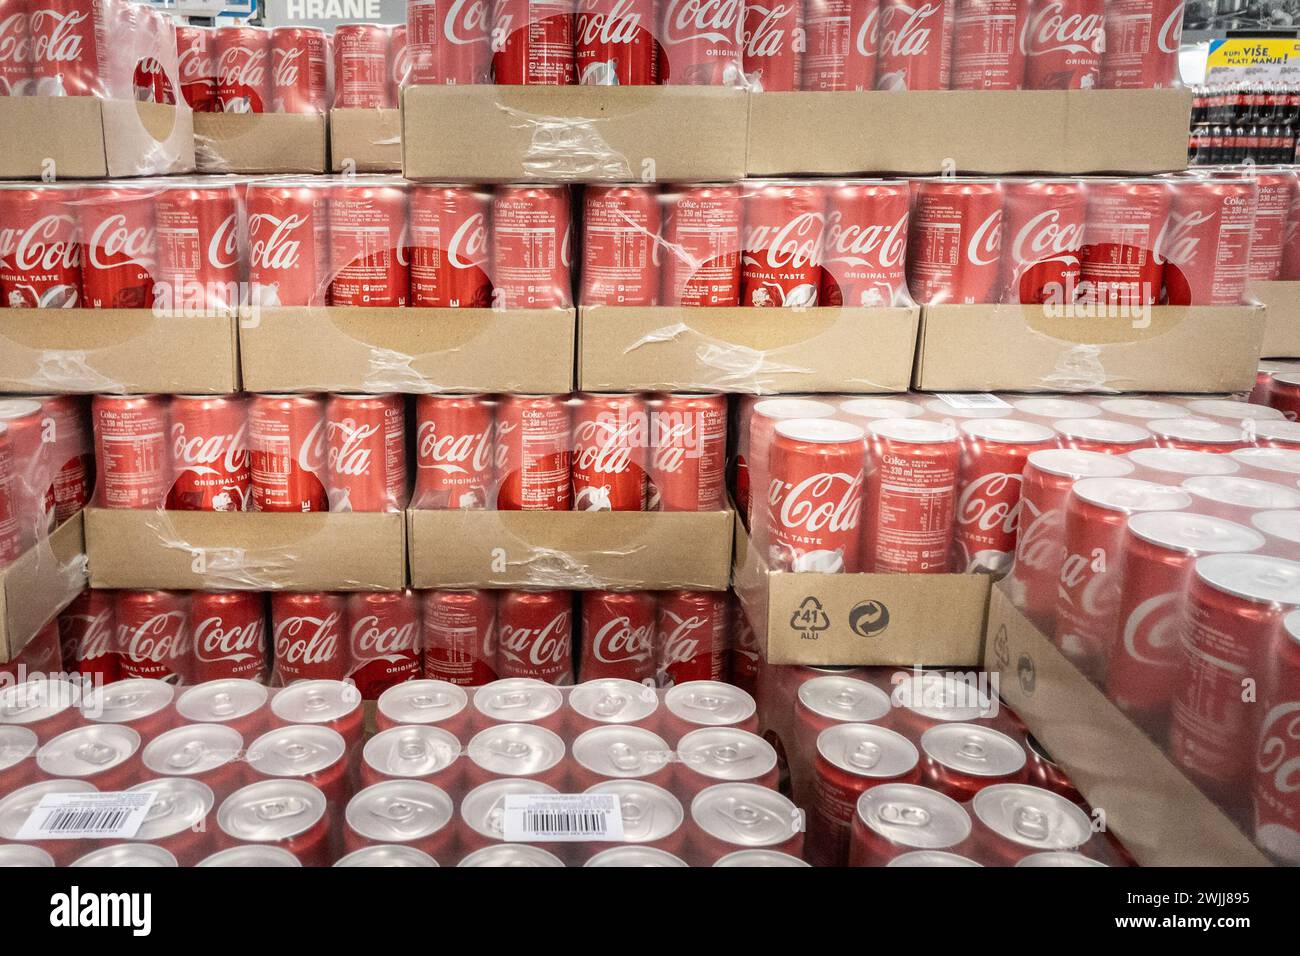 Immagini di un pellet di lattine confezionate di coca cola in vendita a belgrado, Serbia. La Coca-Cola Company è una multinazionale americana fondatrice Foto Stock